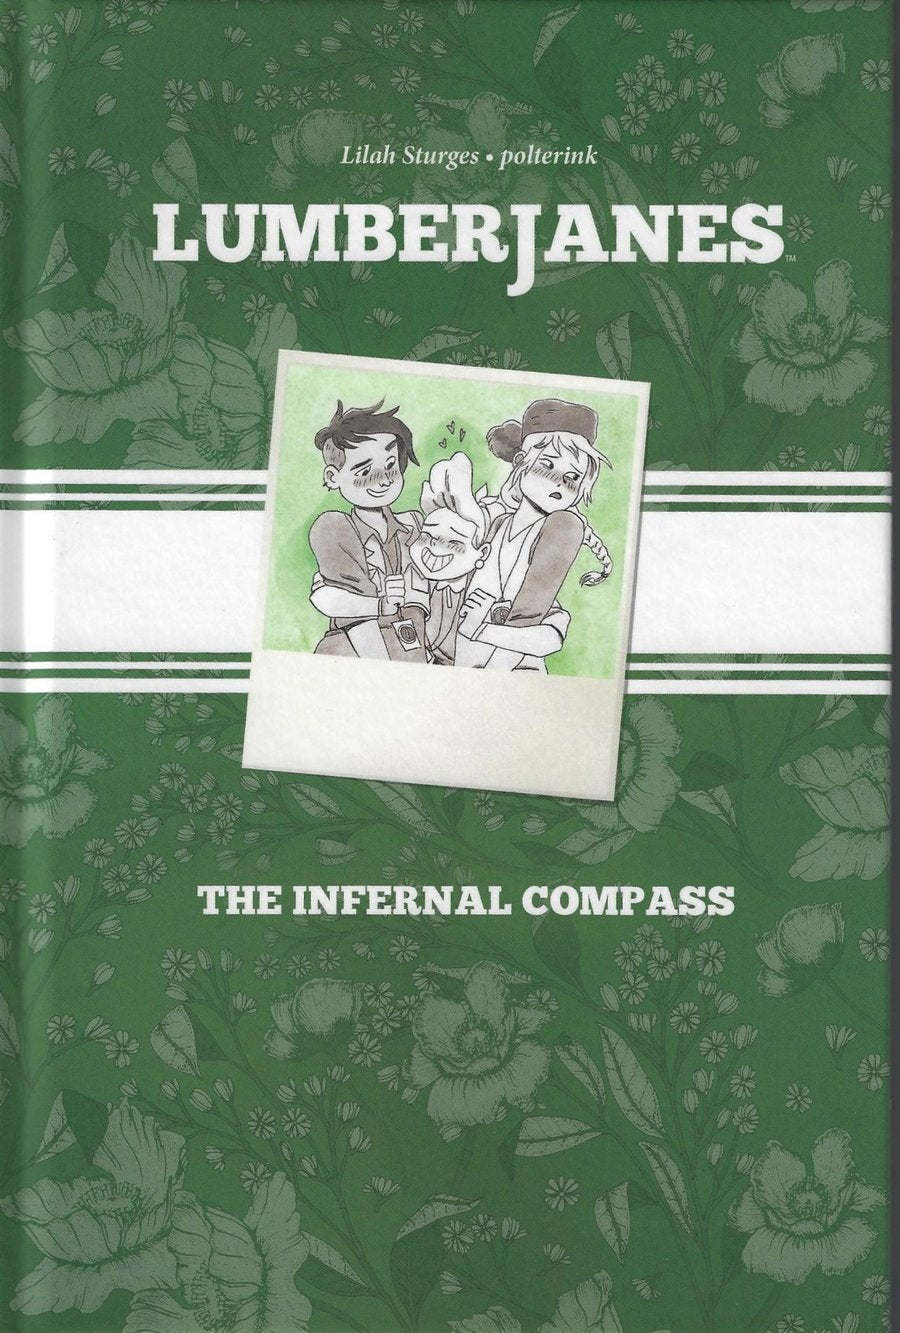 Lumberjanes Original GN VOL 01 Infernal Compass HC